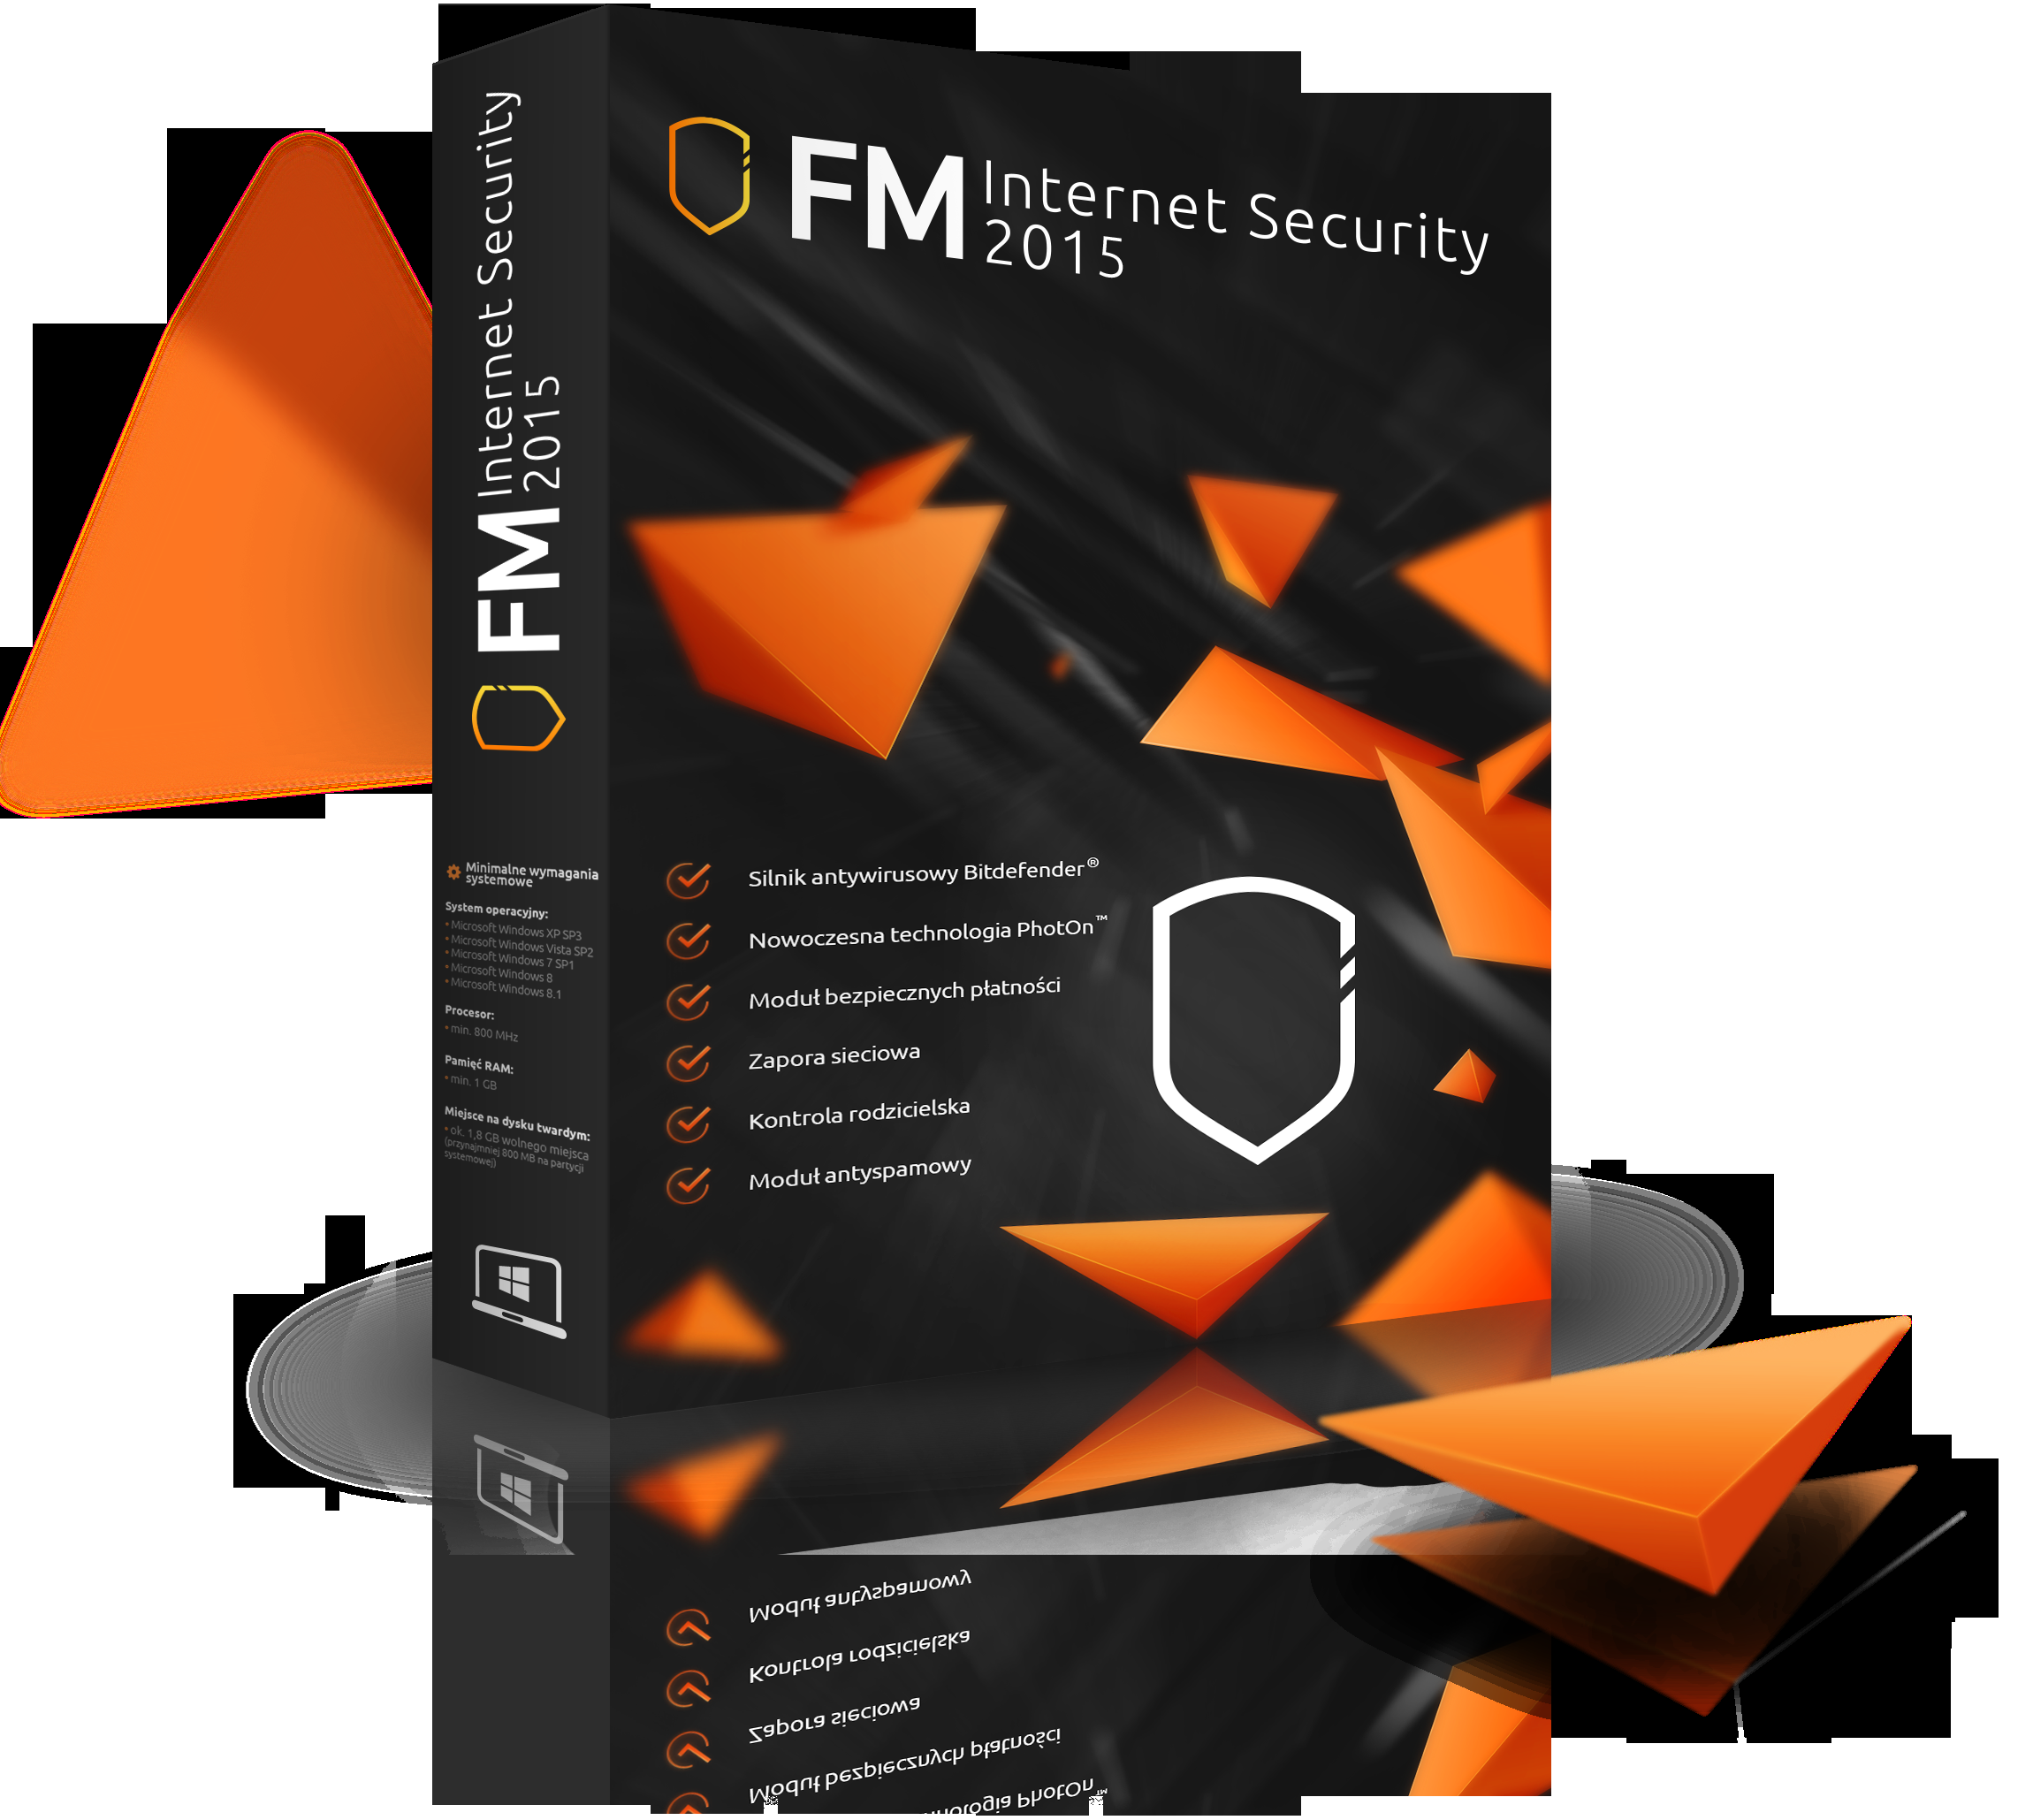 FM Internet Security 2015 zawiera nowoczesne technologie bezpieczeństwa, które zapewniają niezrównaną ochronę Twojego komputera.